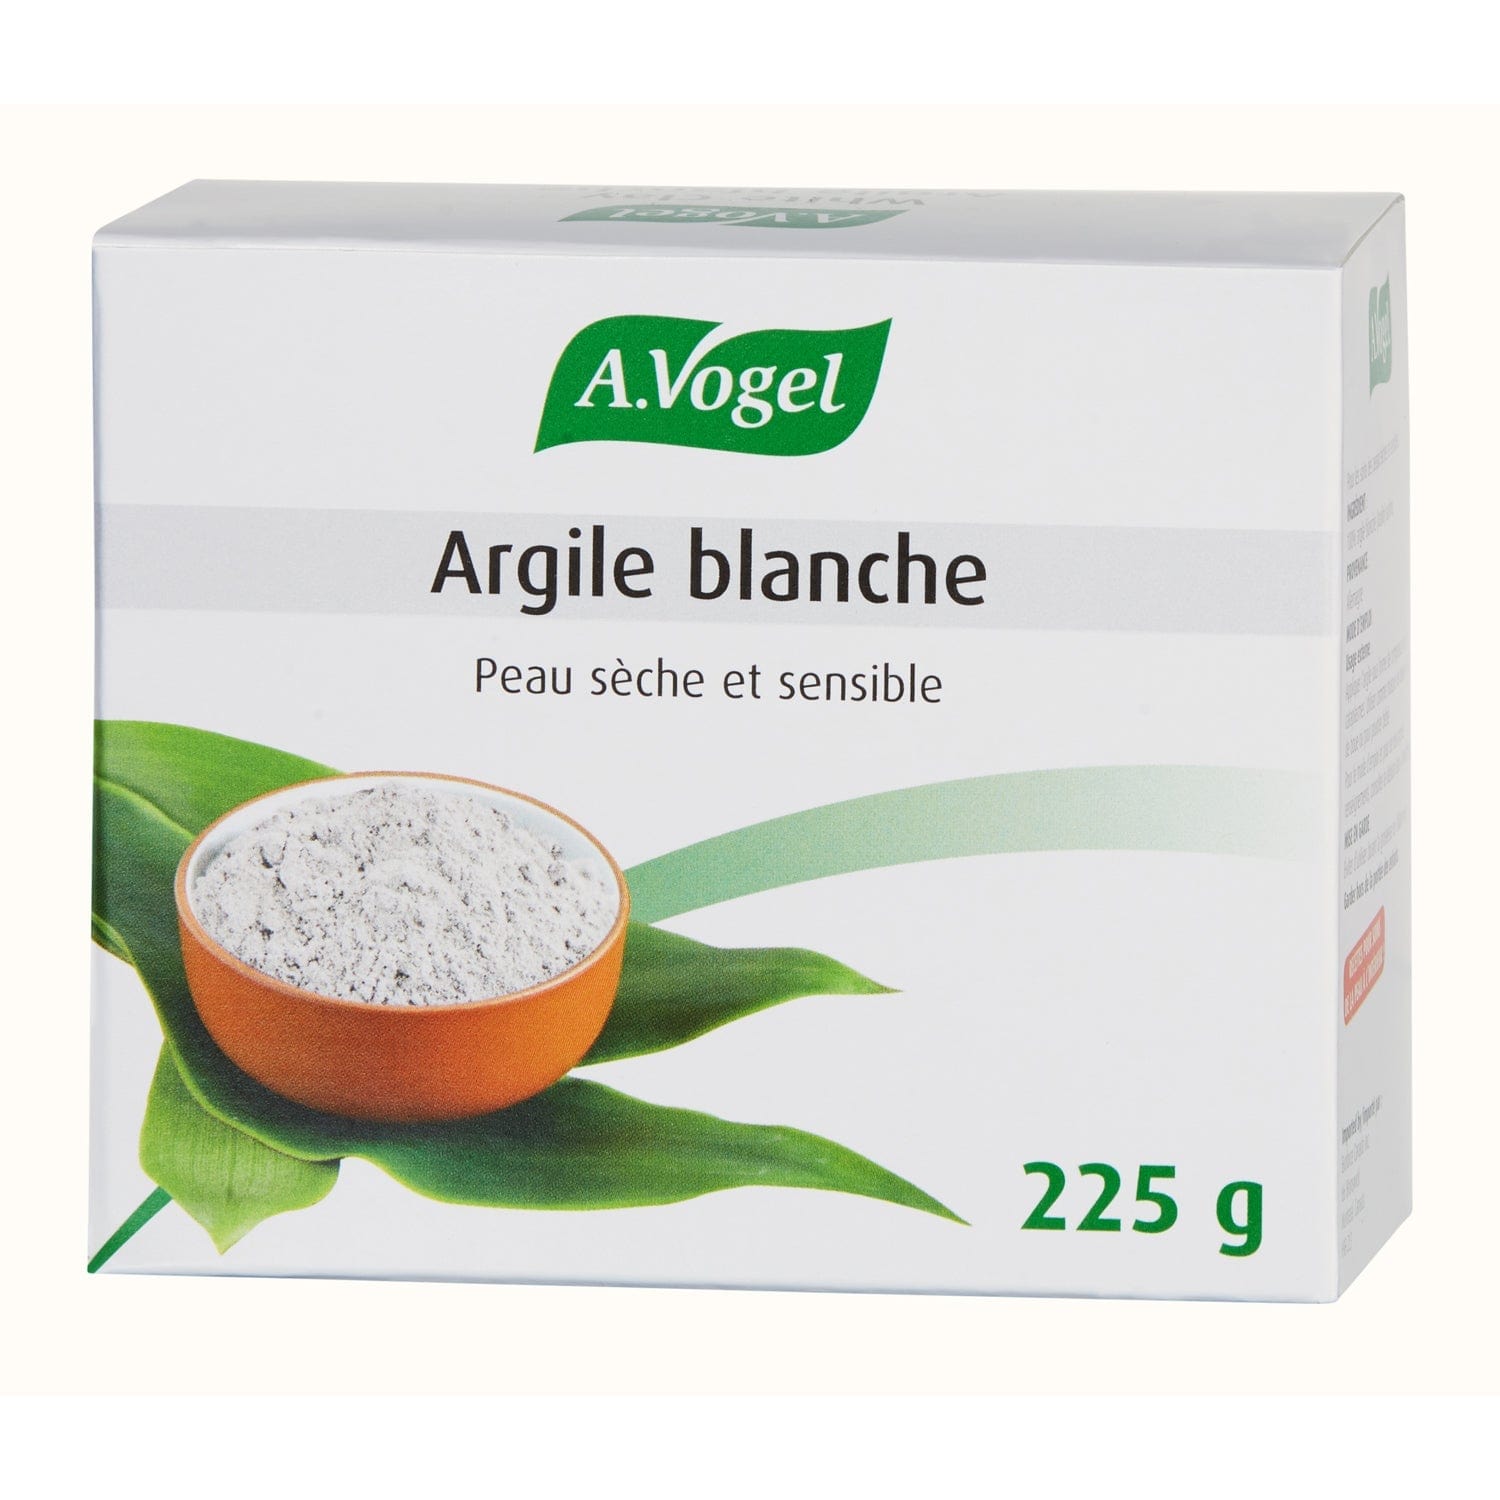 BIOFORCE (A. VOGEL) Soins & beauté Argile blanche (légère) 225g